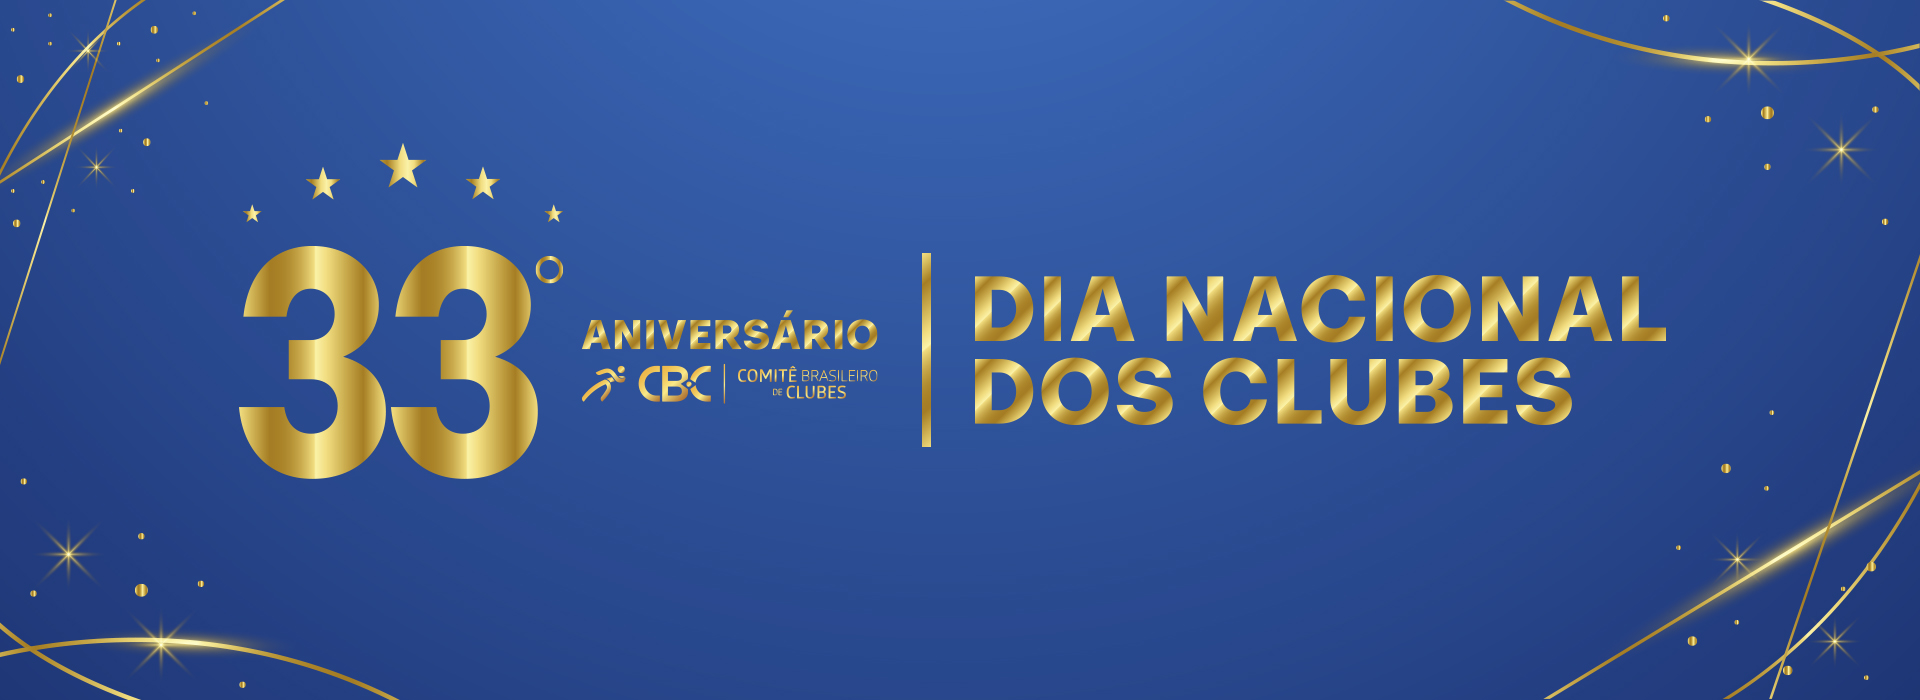 33 anos do CBC e Dia Nacional dos Clubes: Celebrando as Conquistas da Rede Nacional de Clubes Formadores 